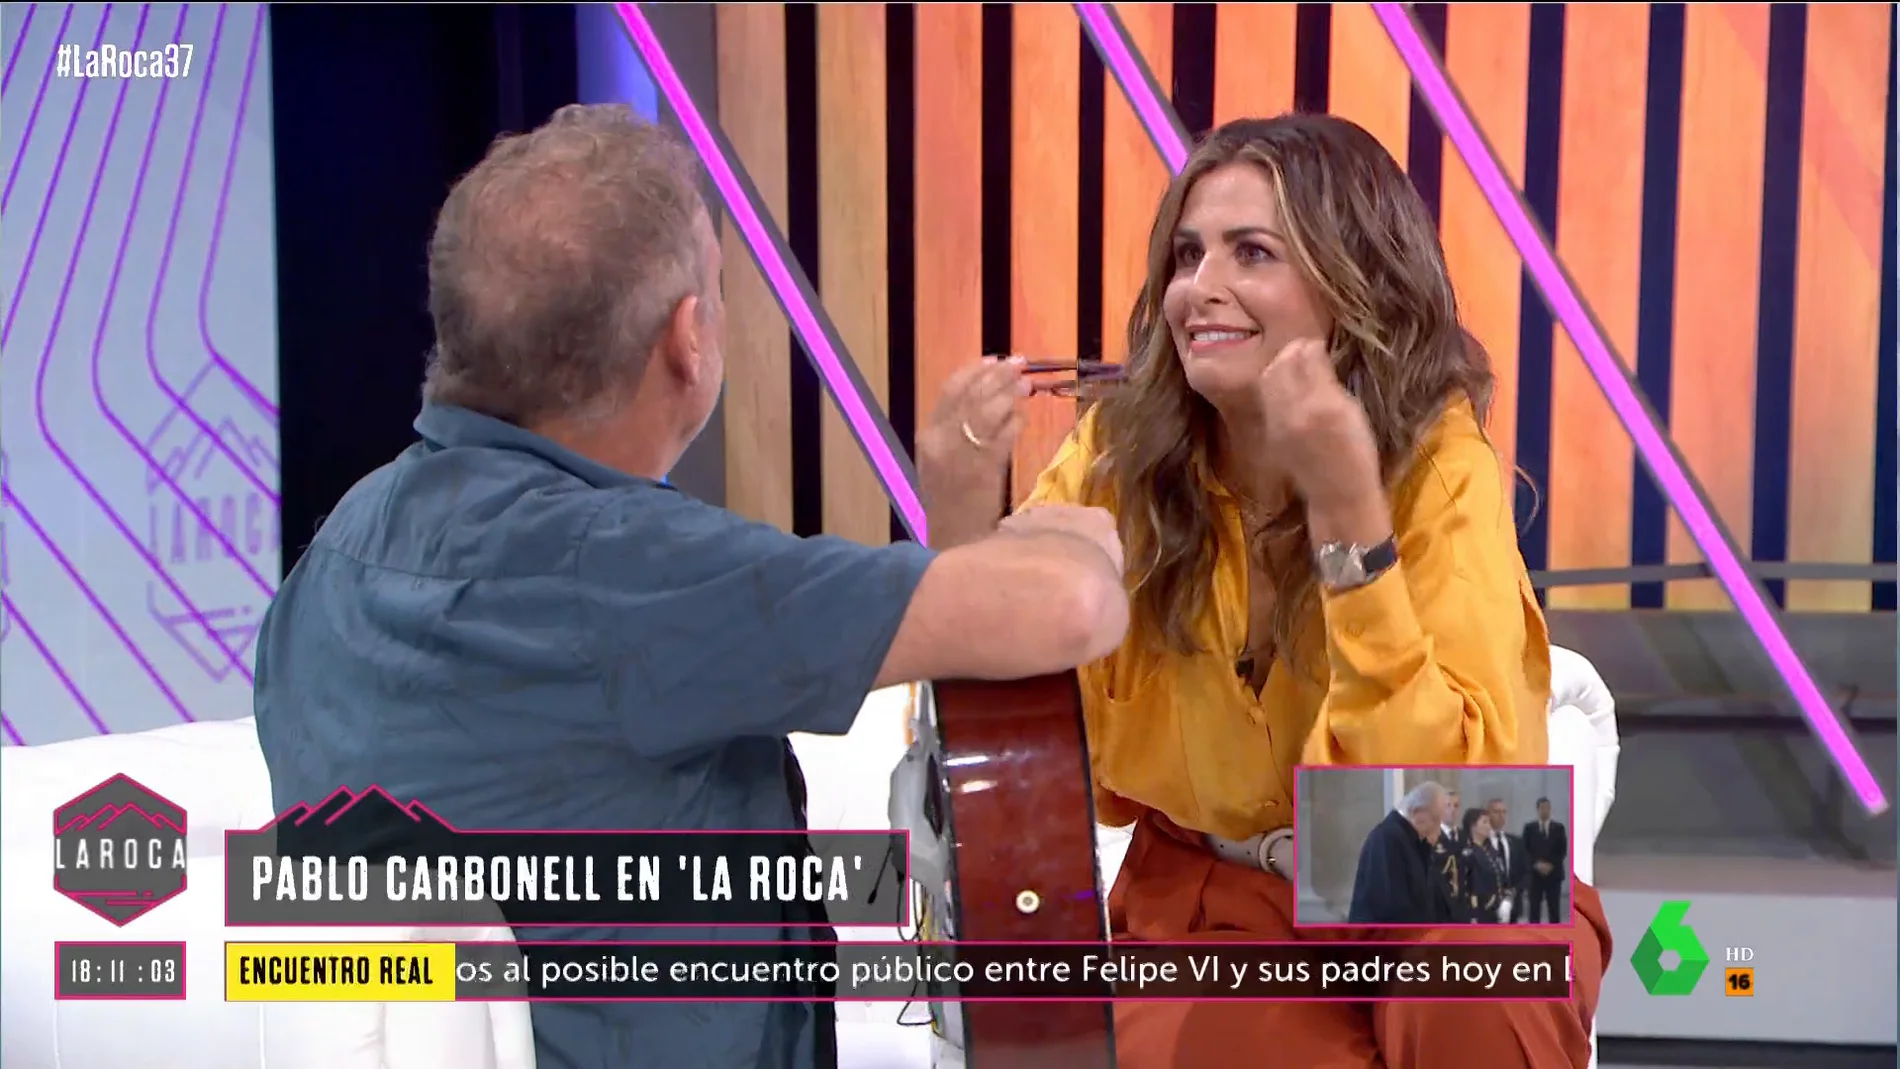 Nuria Roca interrumpe en directo a Pablo Carbonell por cantar este tema: "Espera, que me van a despedir"